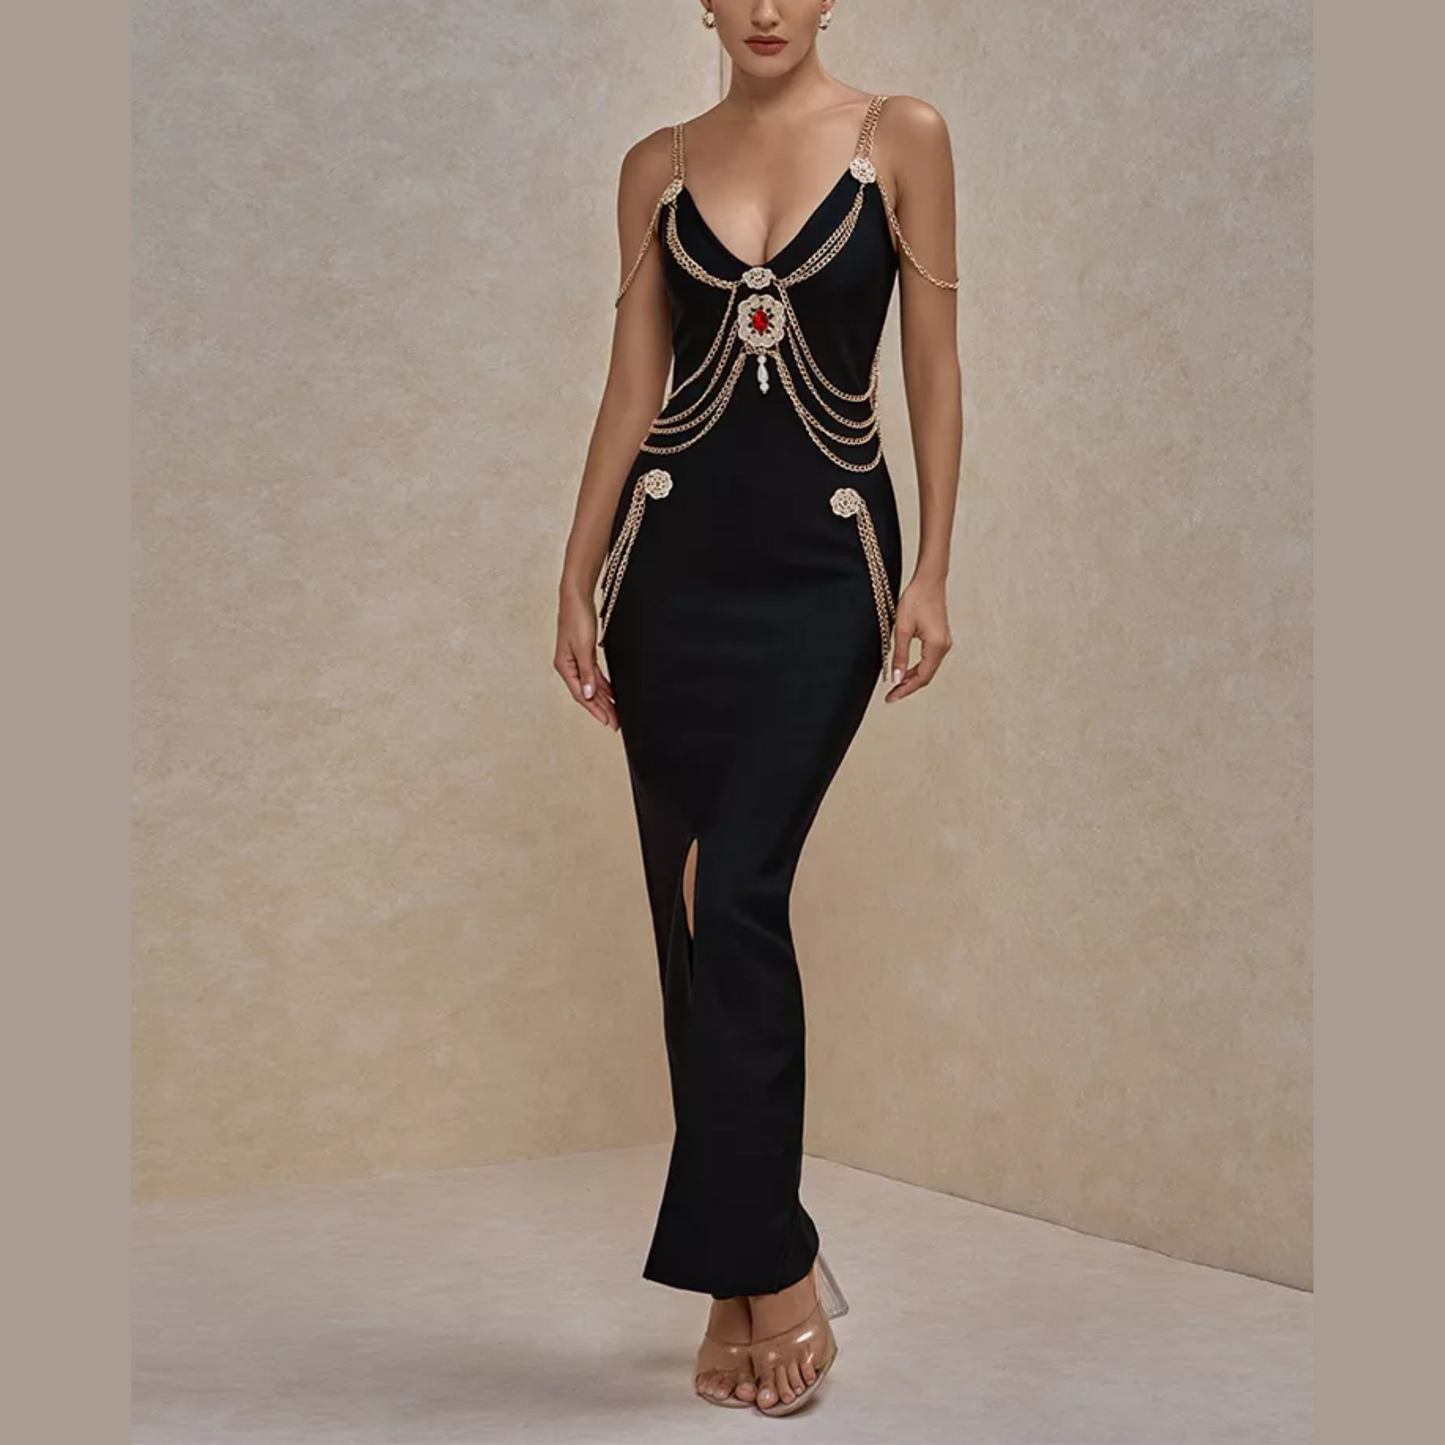 Gia - Black Chain Embellished Long Bandage Dress - Model Mannequin